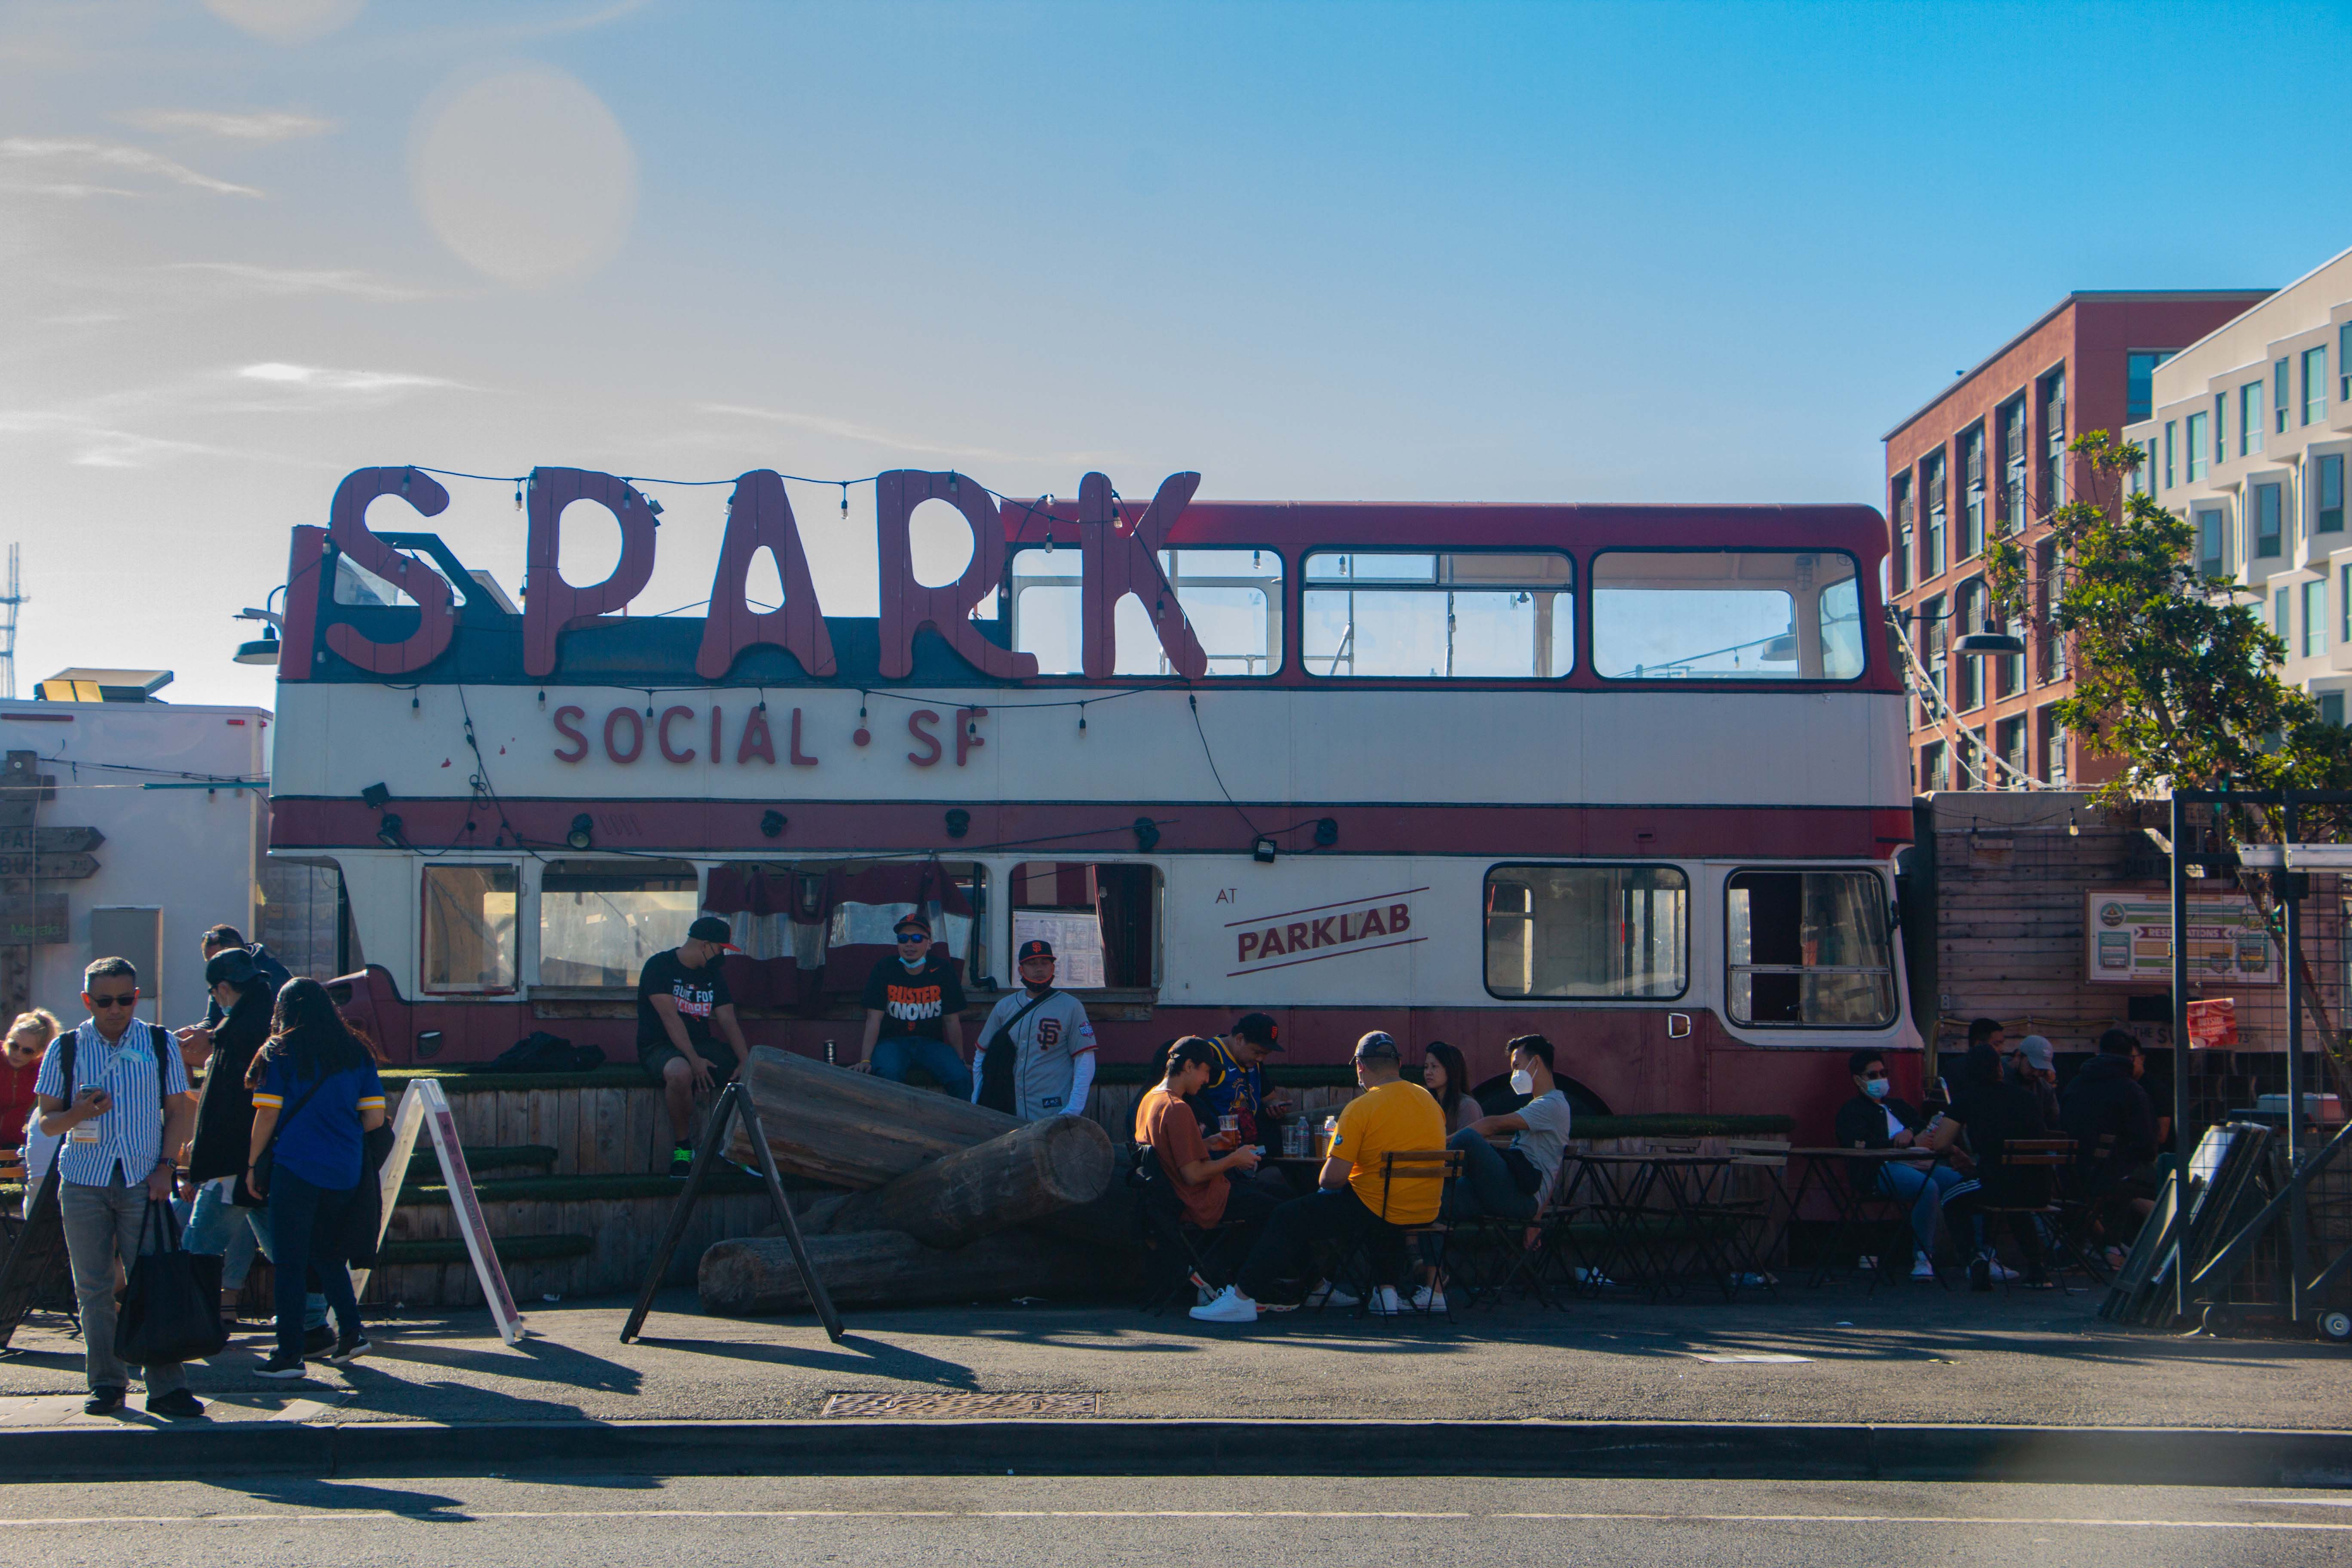 Spark Social SF ood truck park